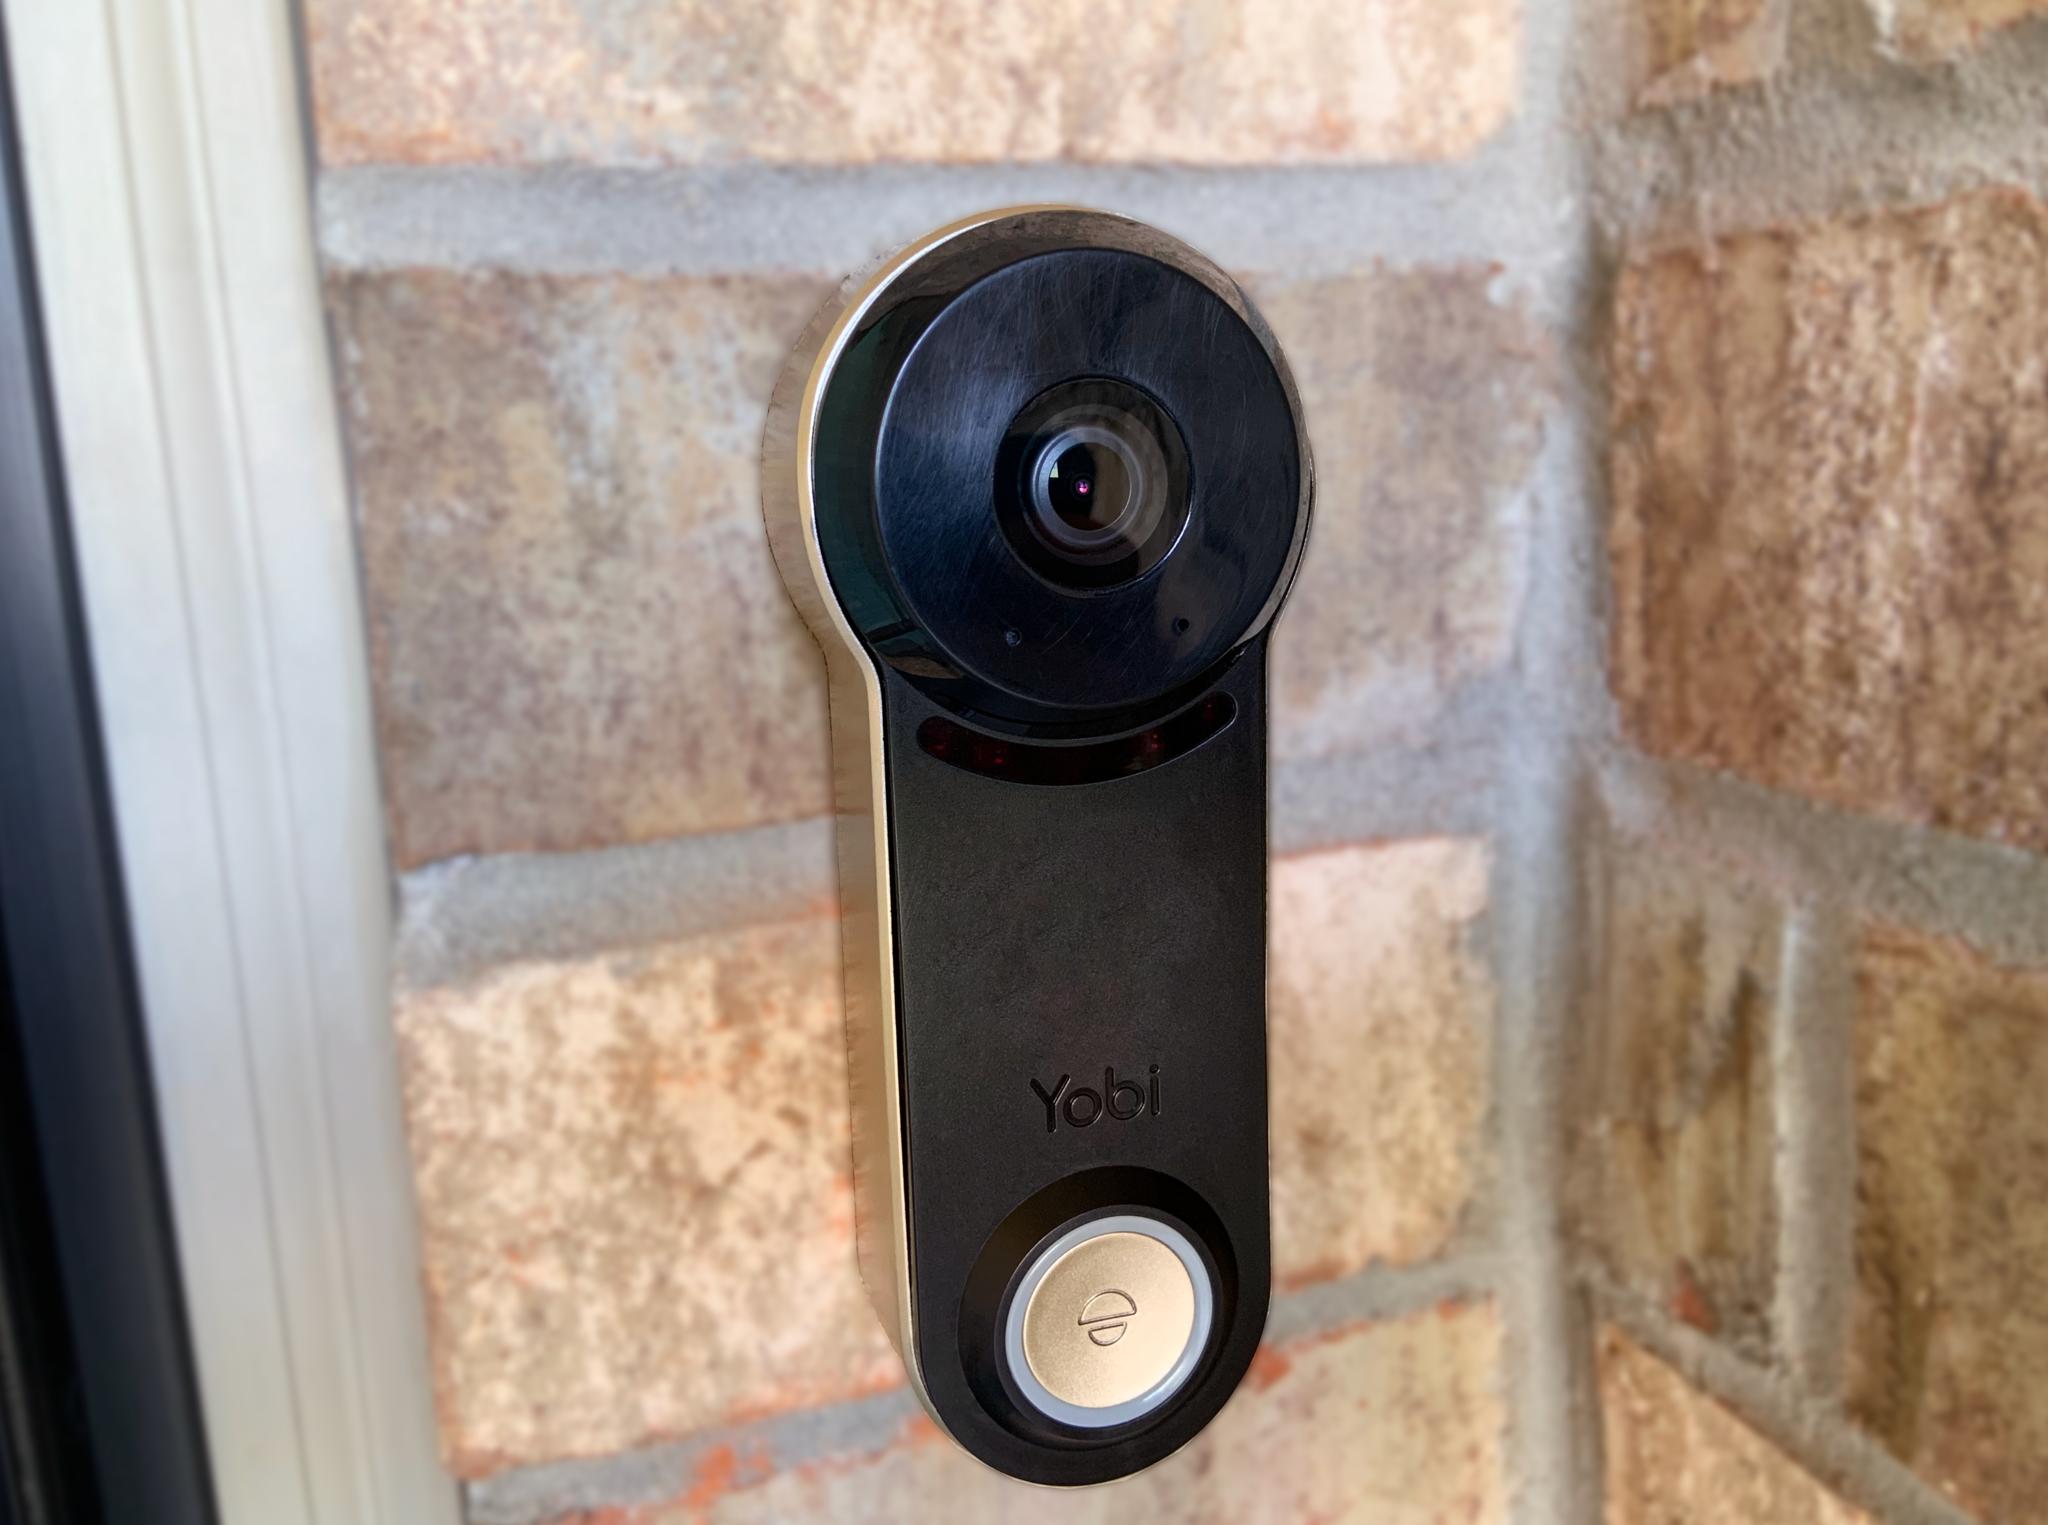 Yobi B3 Video Doorbell Review Scratches